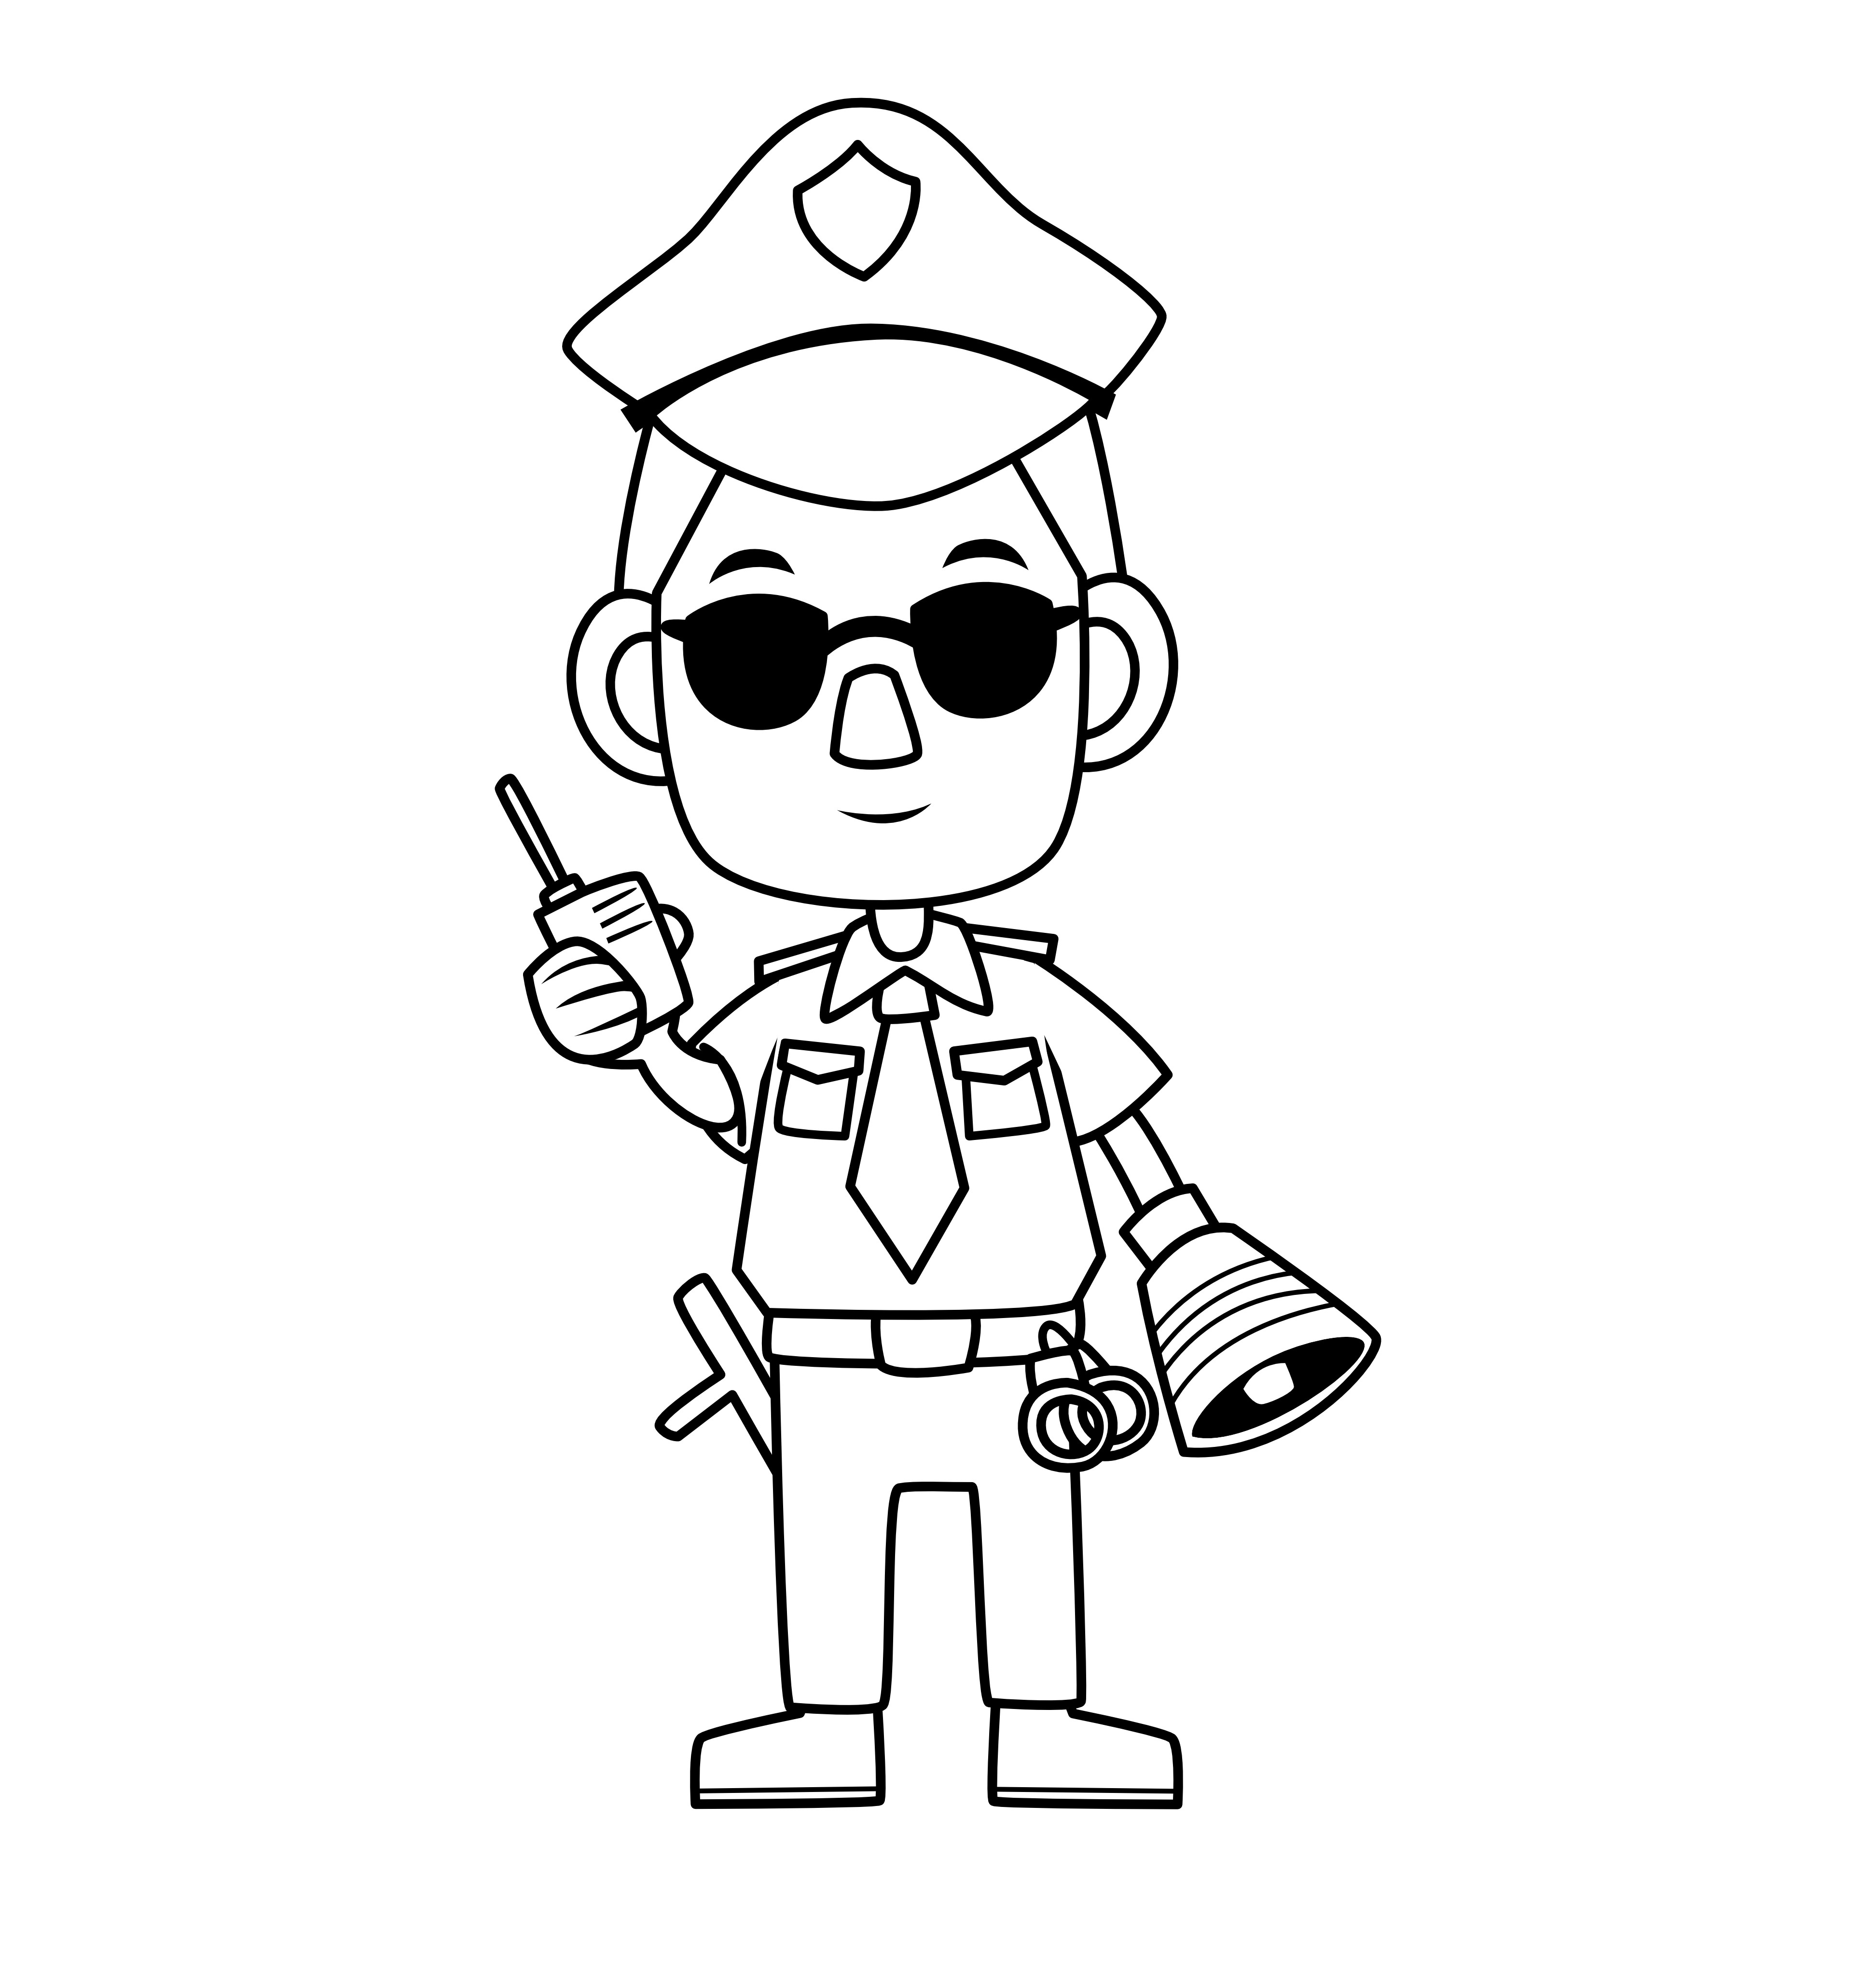 Раскраска полицейский в очках формата А4 в высоком качестве